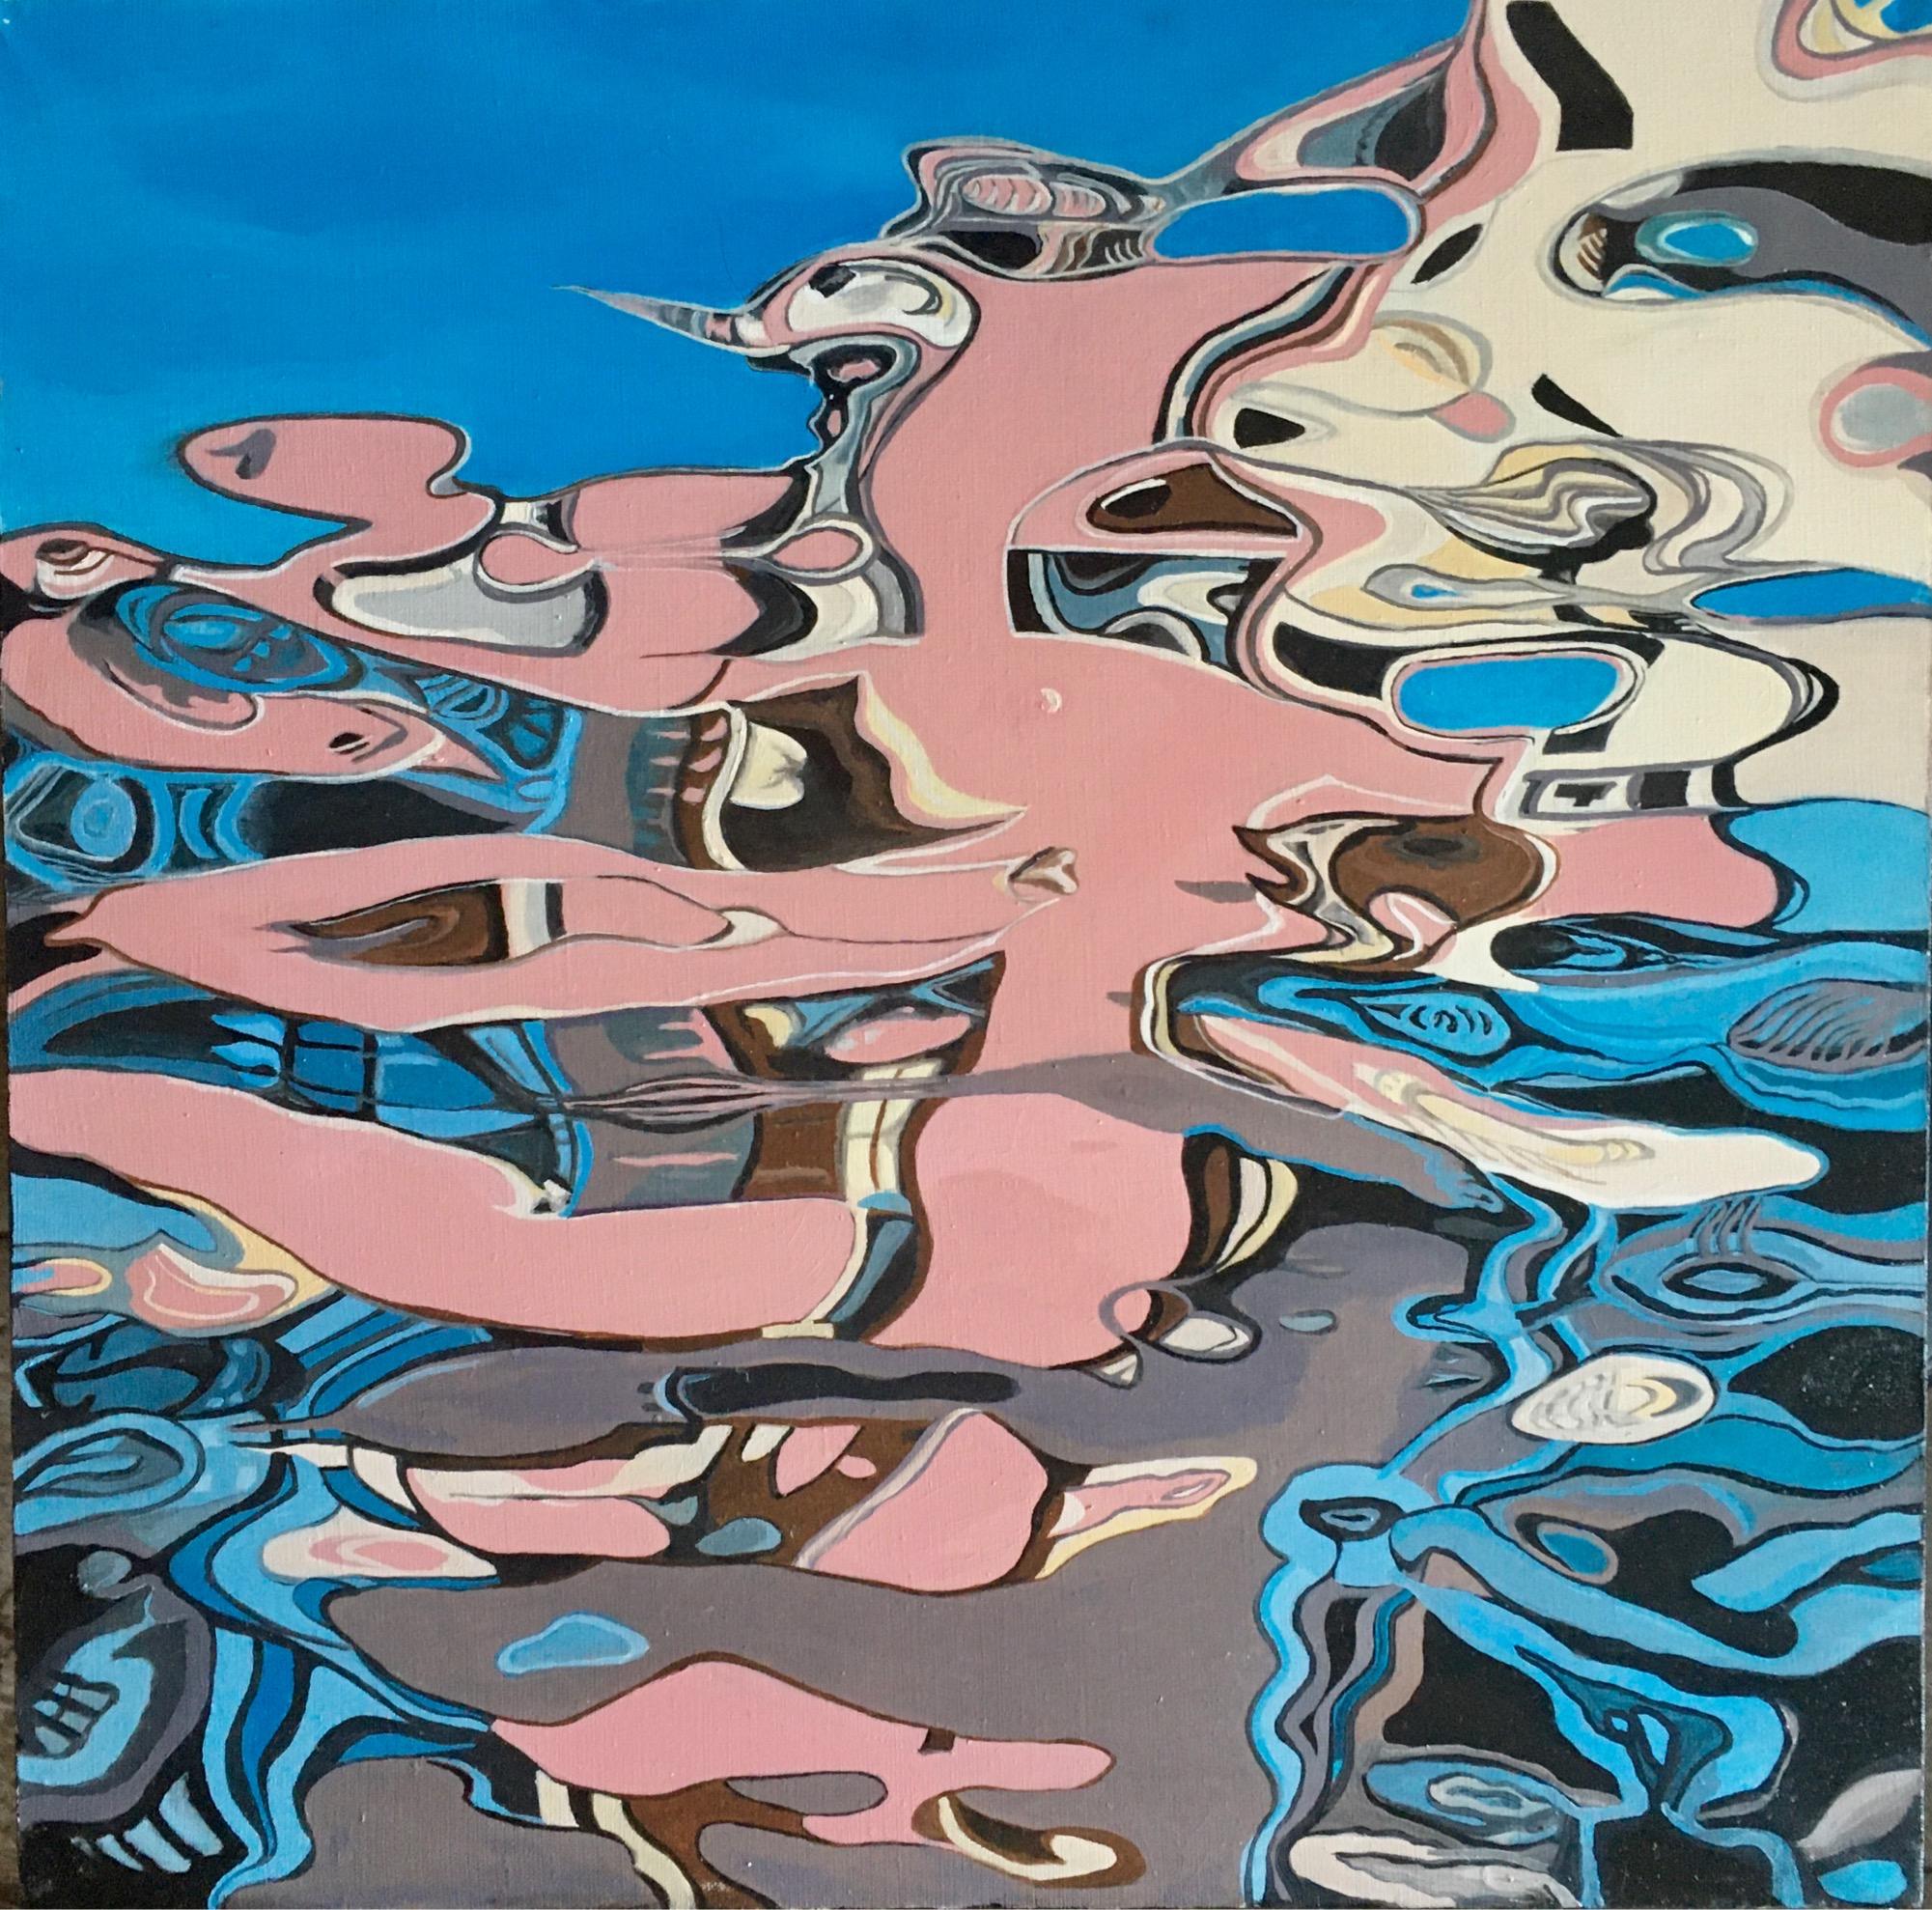 Landscape Painting Galin R - Peinture Reflection II abstraite, réalisée en bleu ciel, rose, beige, gris couleur